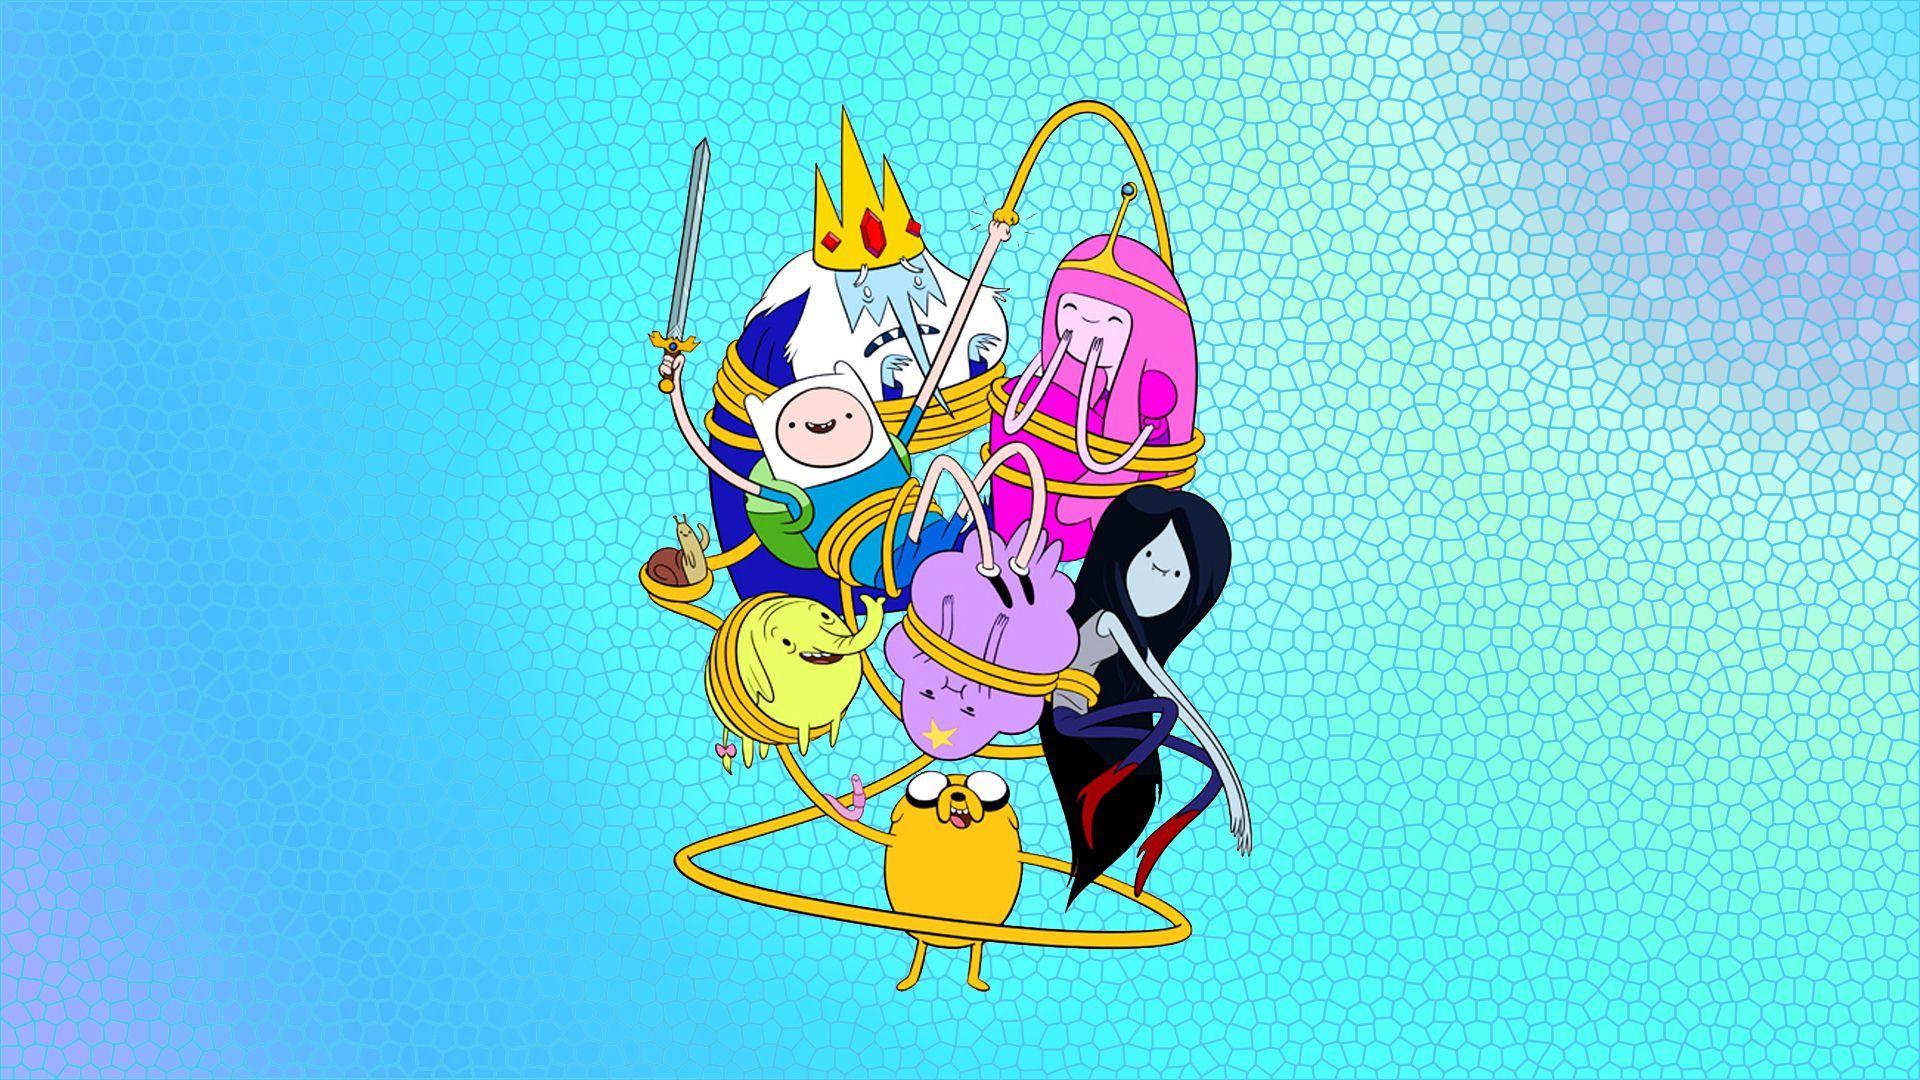 Finn and Jake Adventure Time wallpaper Cartoon wallpaper. HD